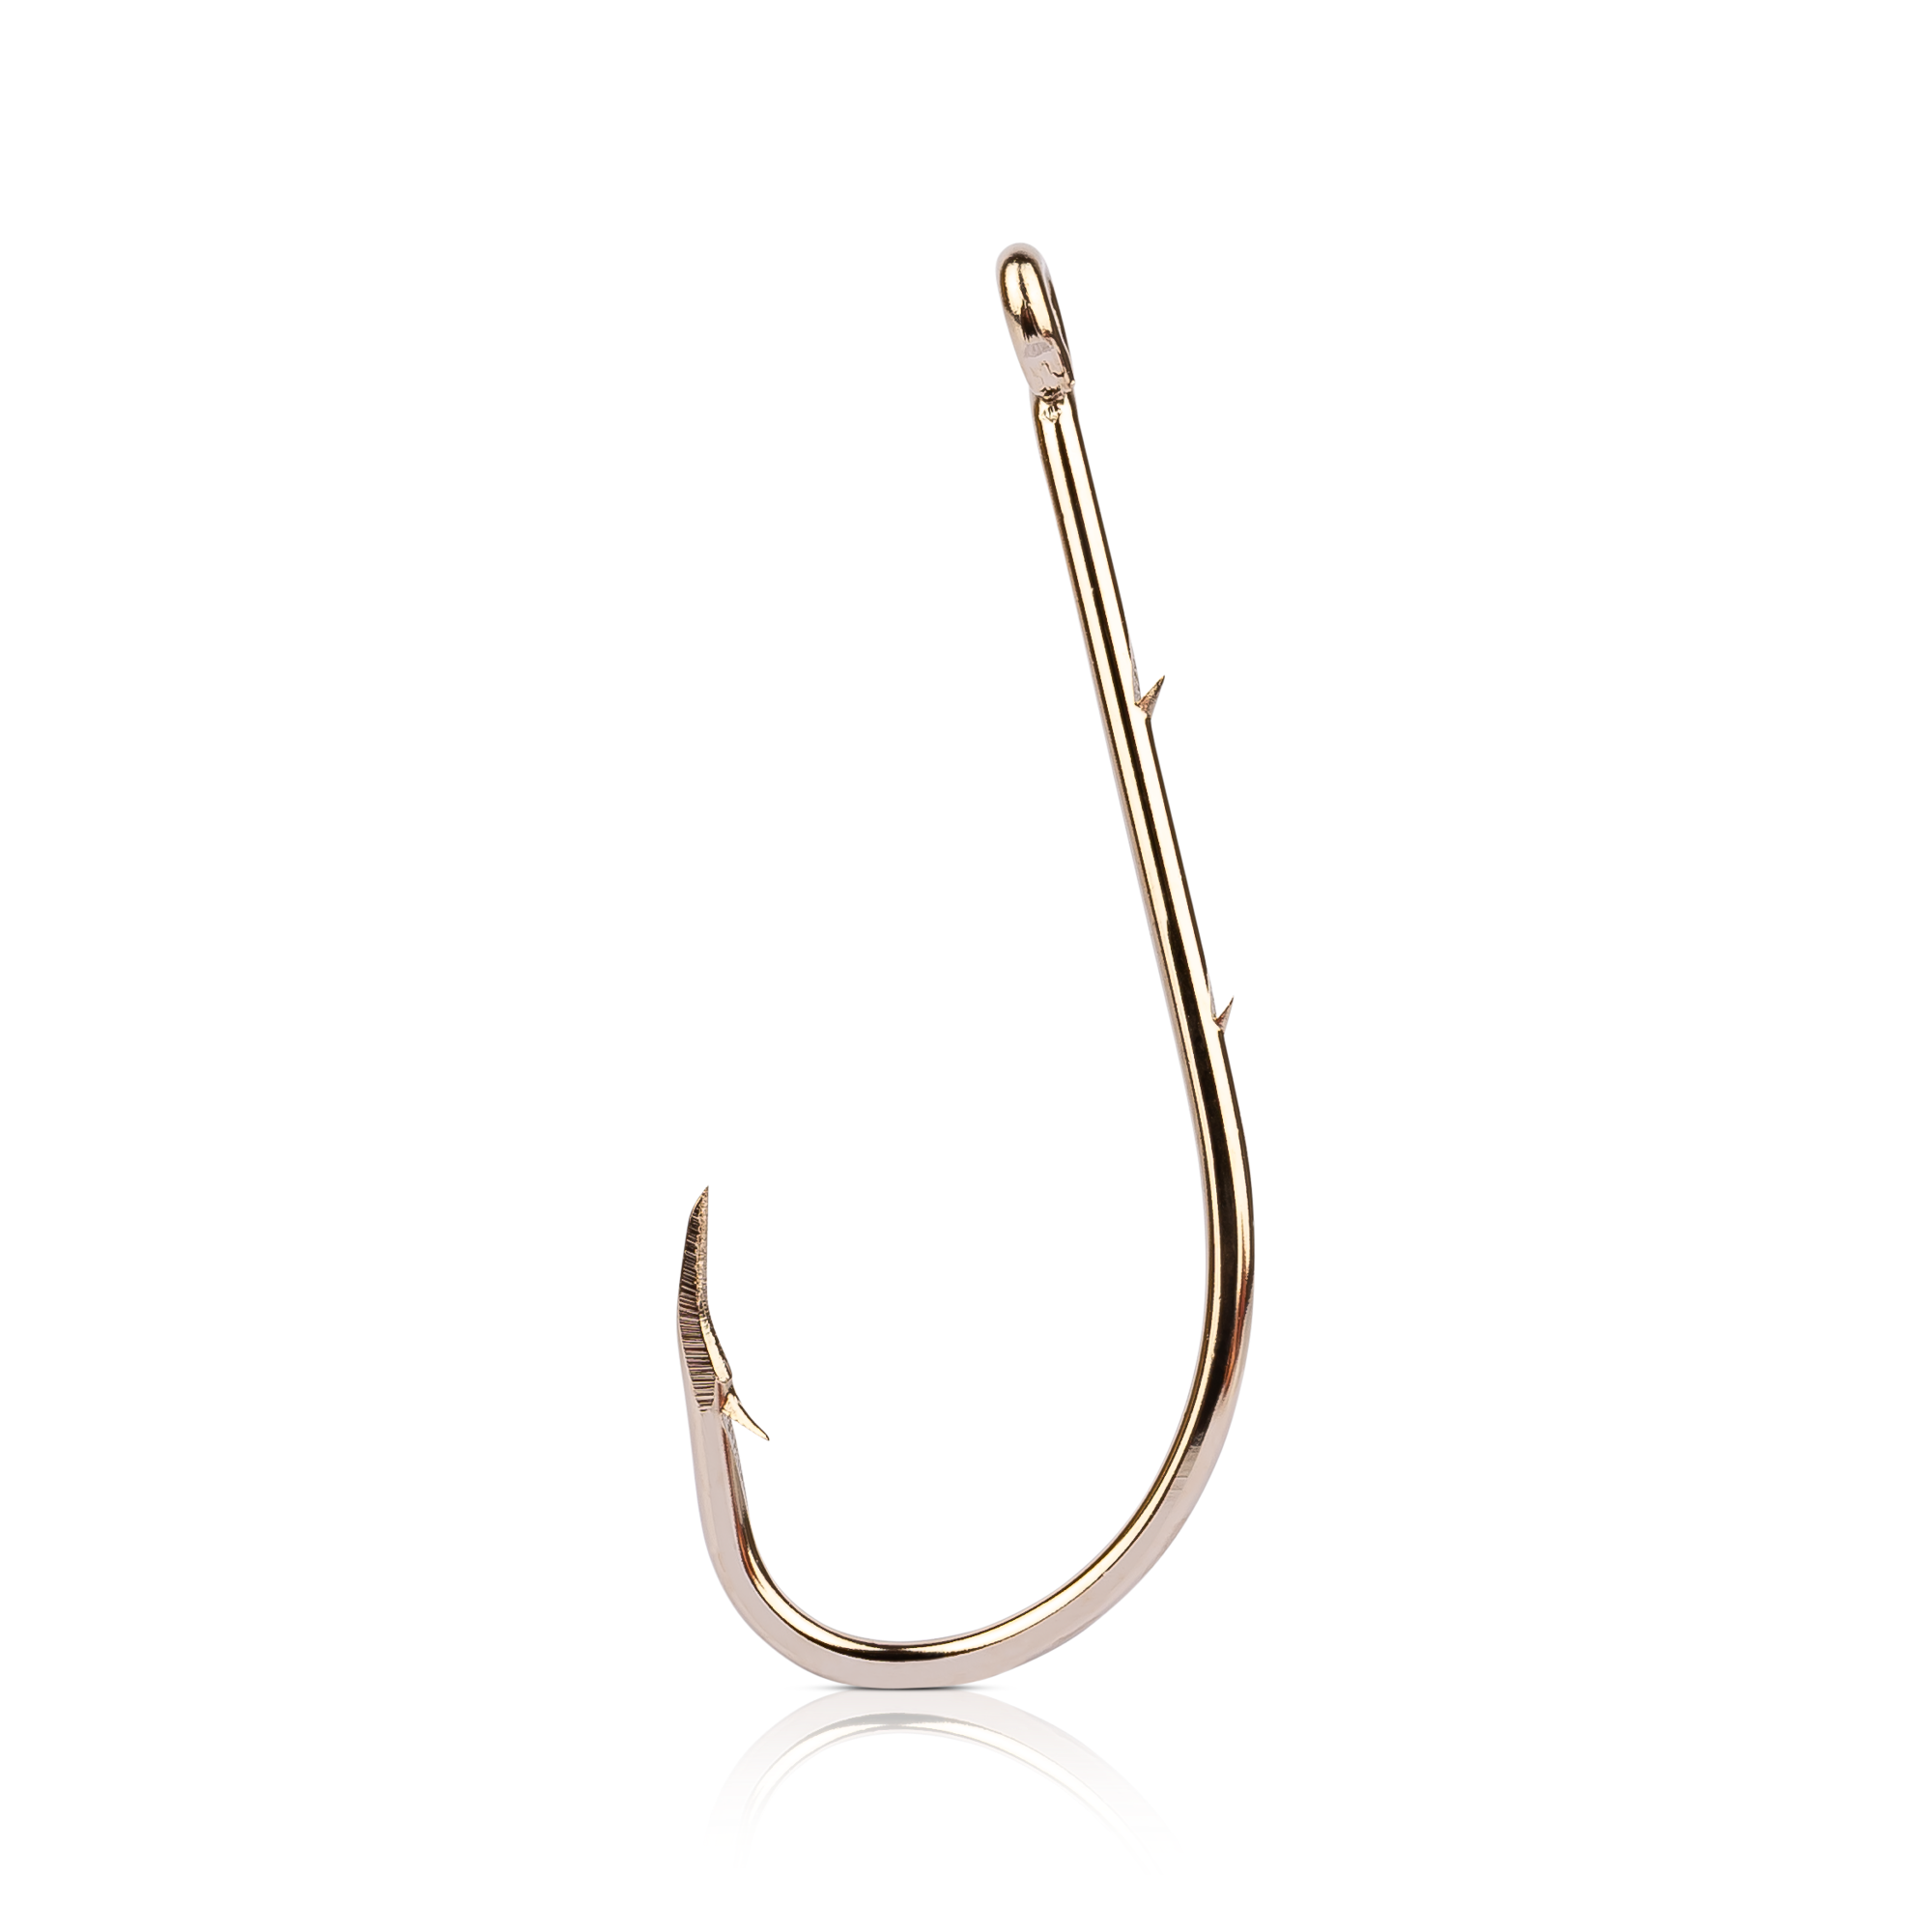 Beak Baitholder Hook - 1X Long